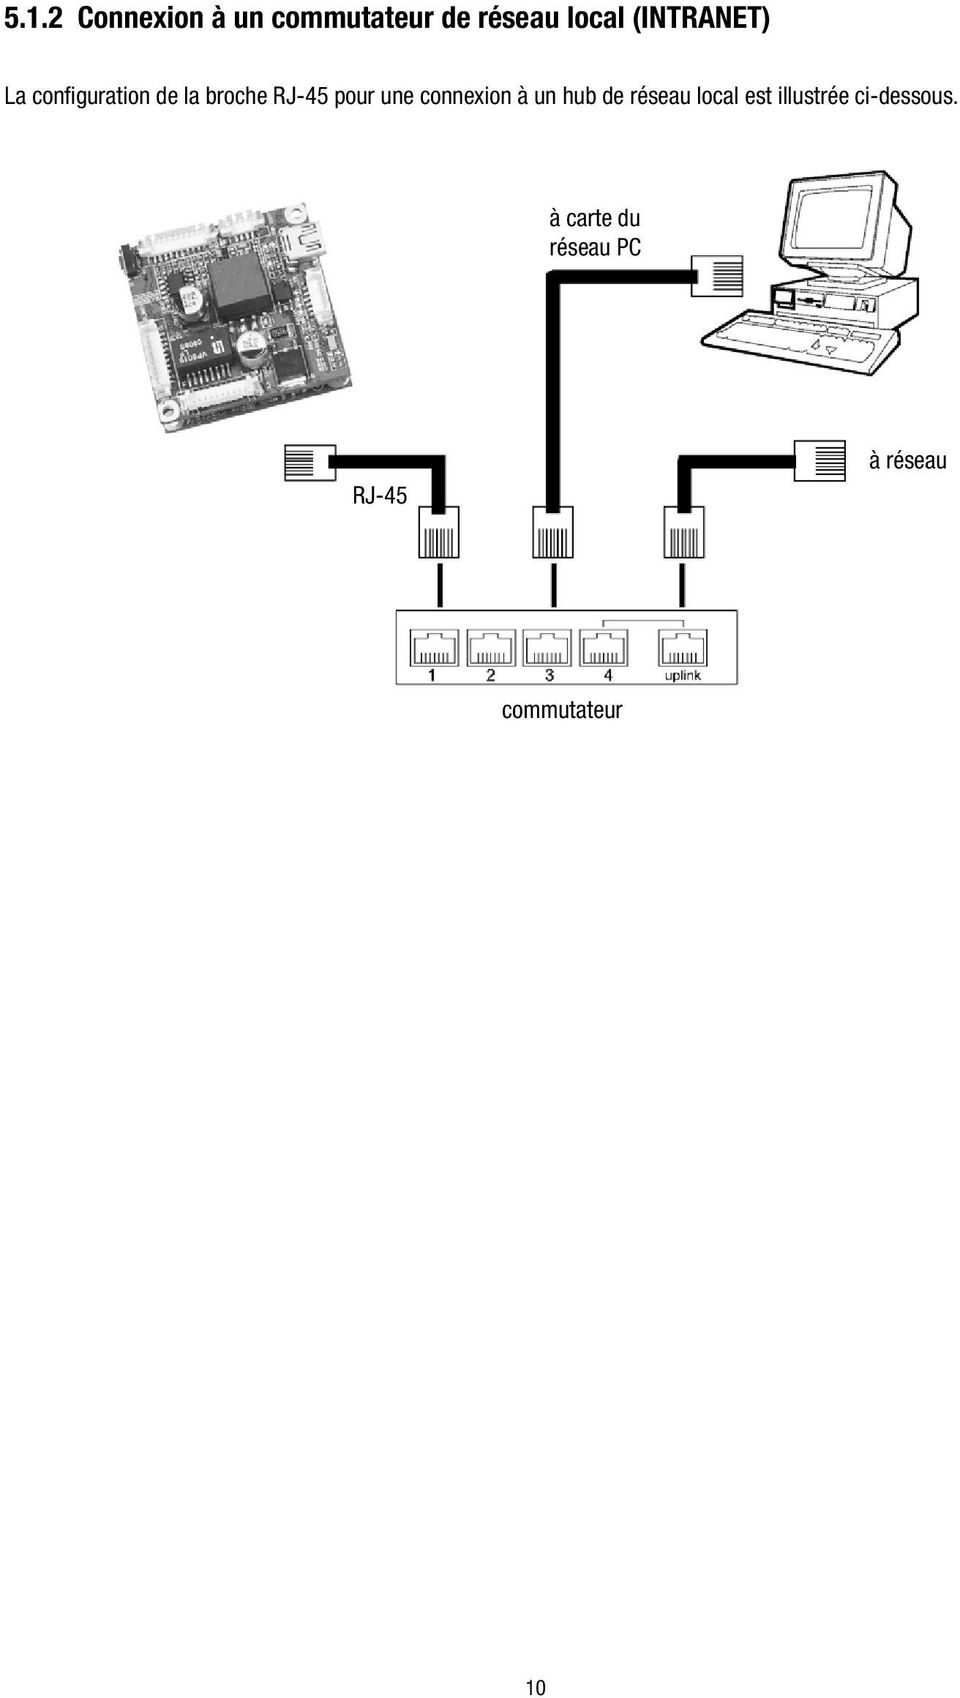 une connexion à un hub de réseau local est illustrée